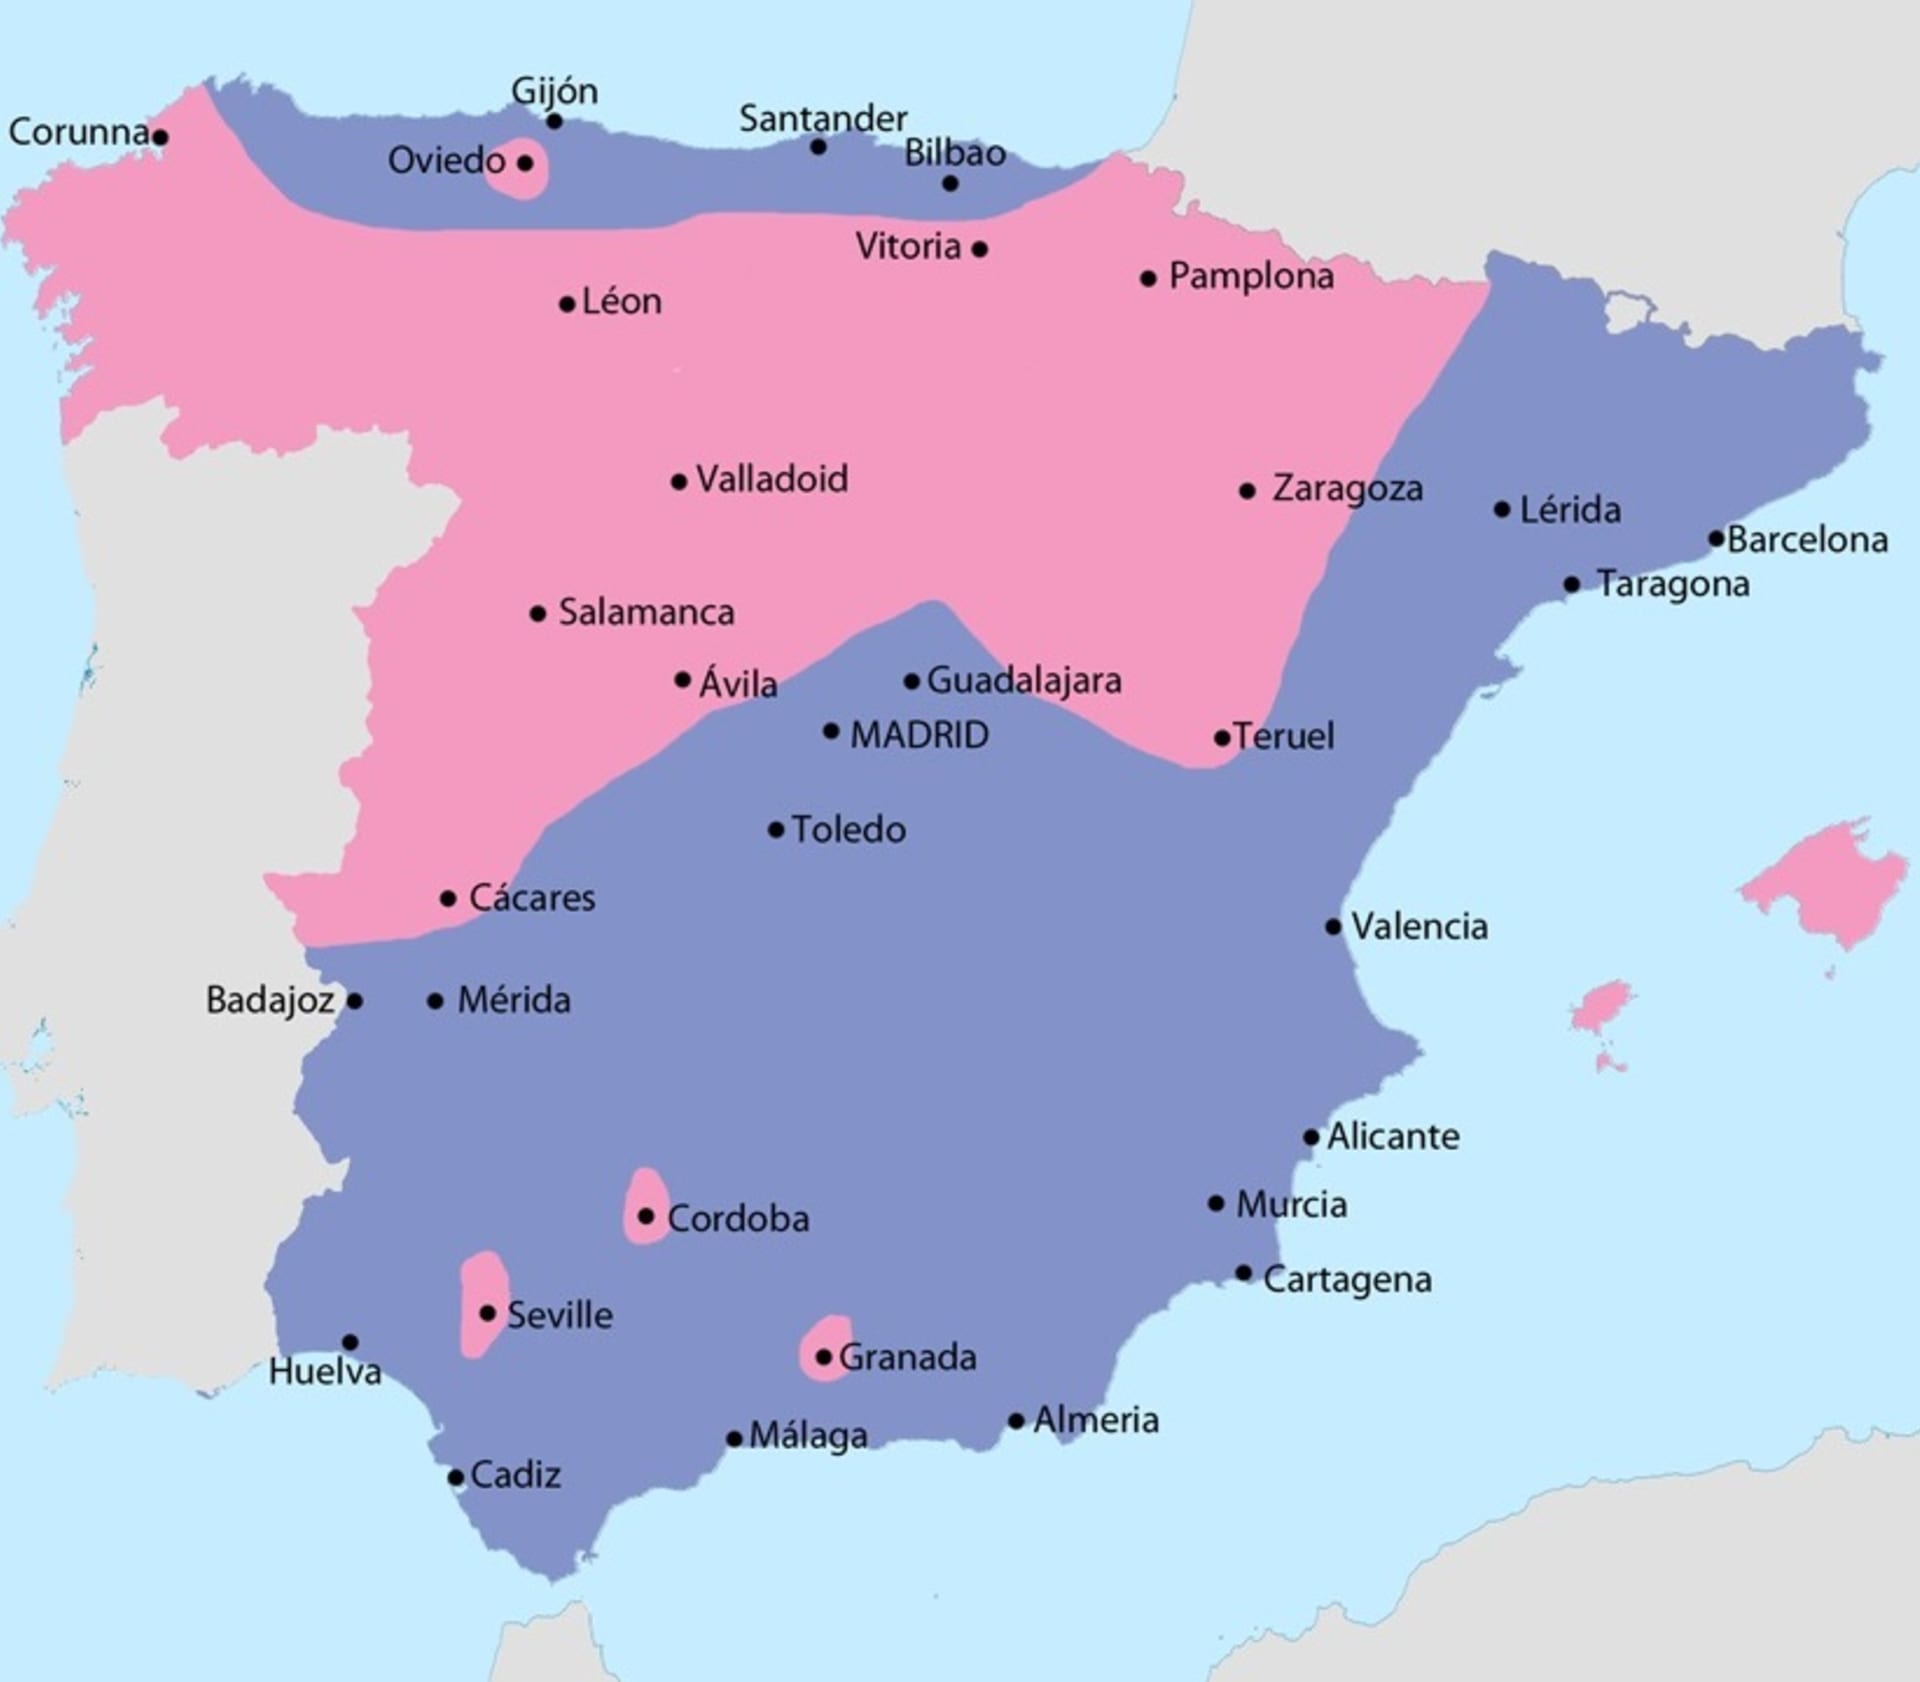 Rozložení sil na konci července 1936 - červeně území kontrolované Francovými pučisty, modře oblast pod kontrolou vlády v Madridu